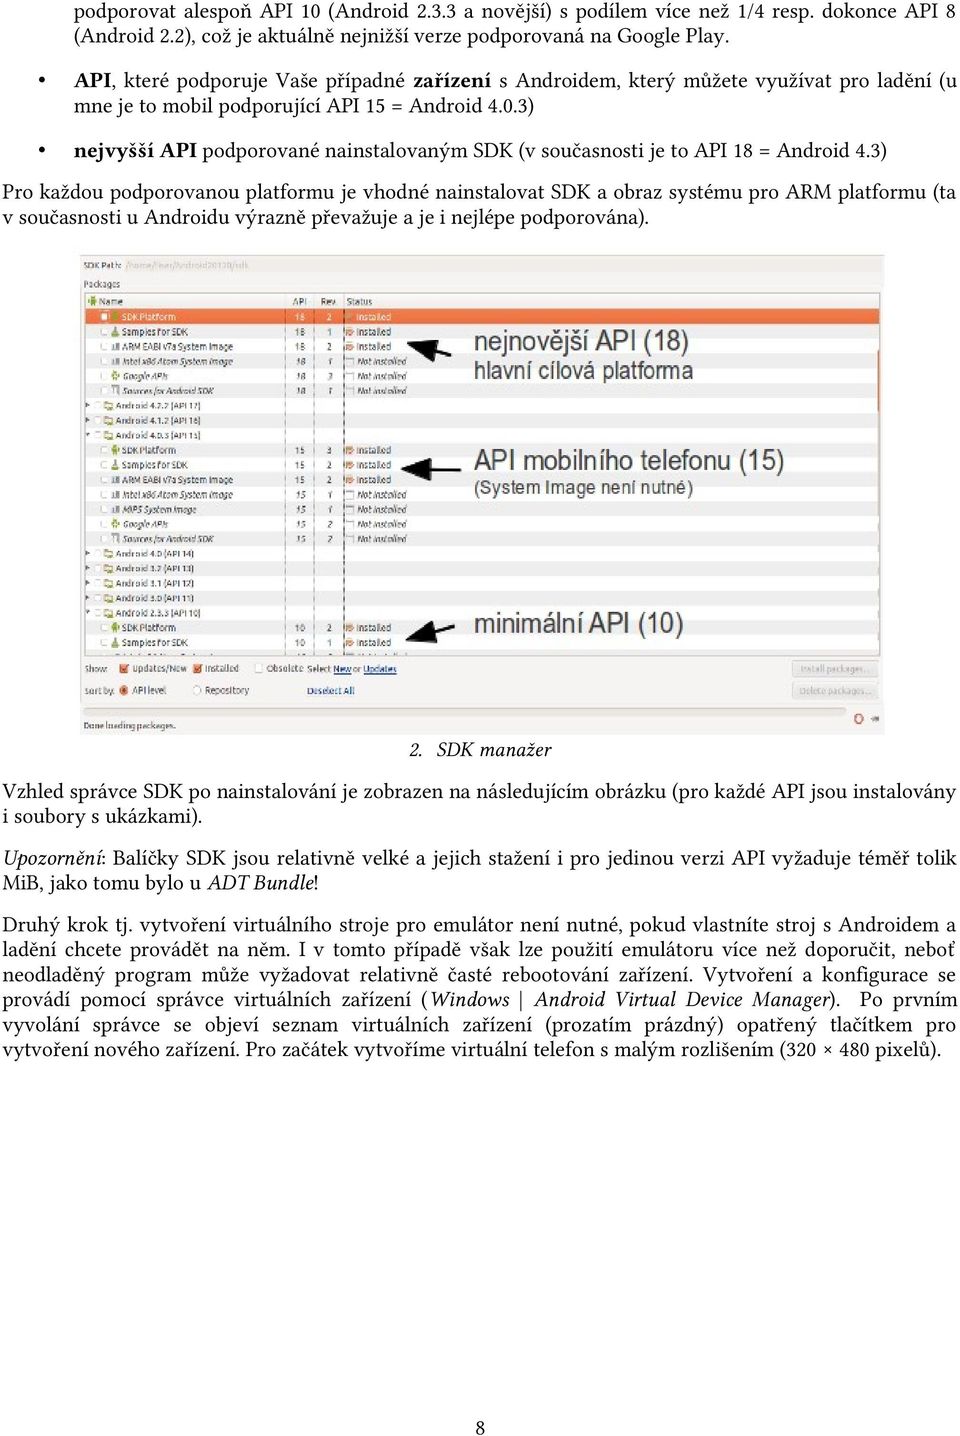 3) nejvyšší API podporované nainstalovaným SDK (v současnosti je to API 18 = Android 4.